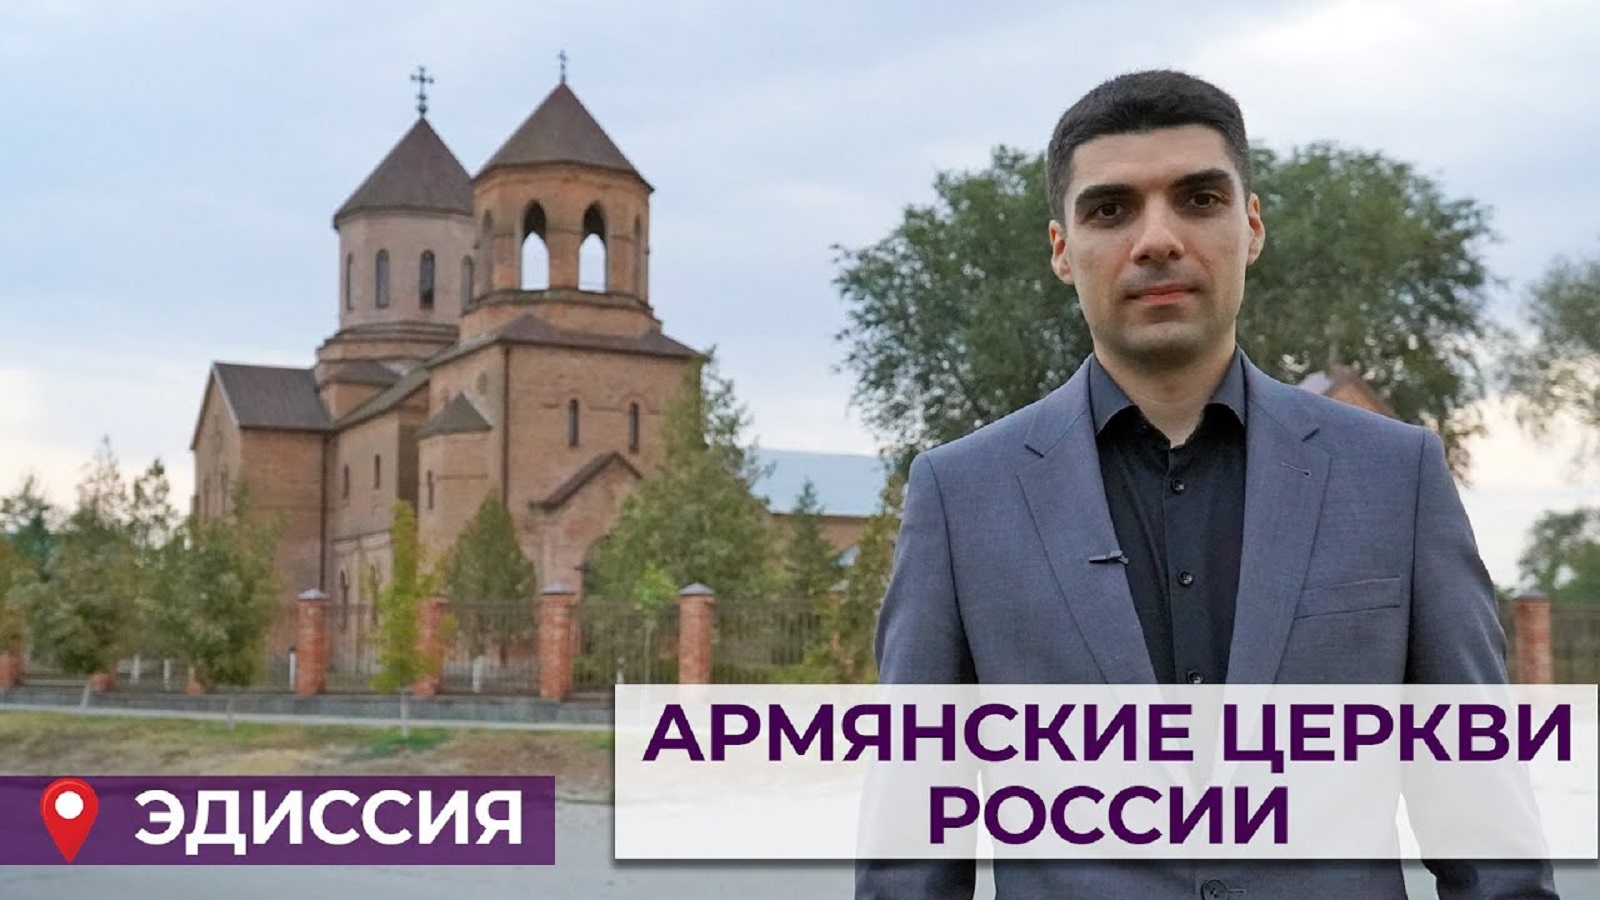 Армянские церкви России | Эдиссия